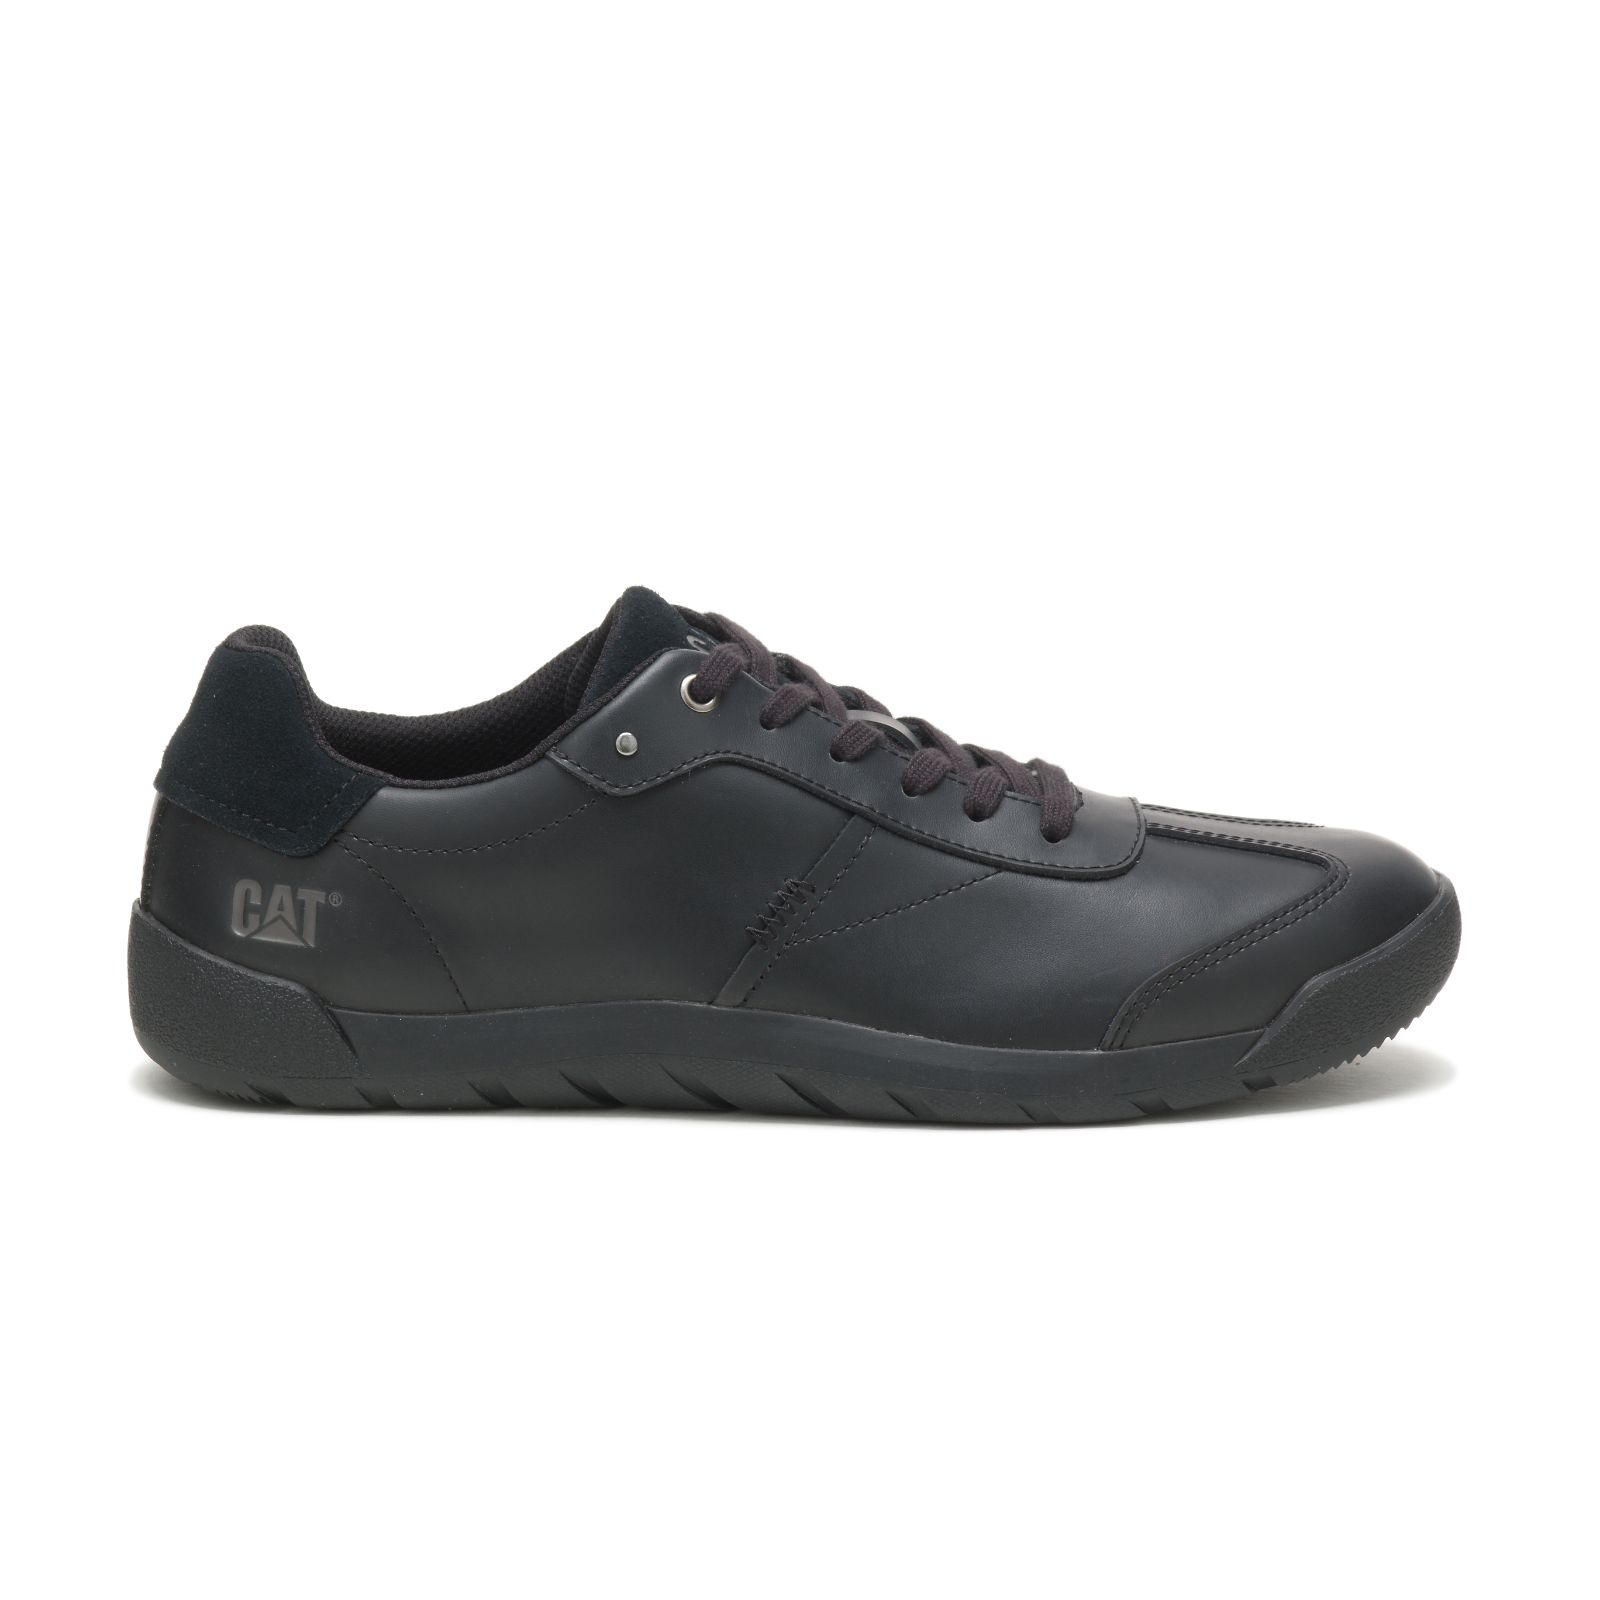 Caterpillar Casual Shoes UAE Online - Caterpillar Decisive Mens - Black XHZEID392